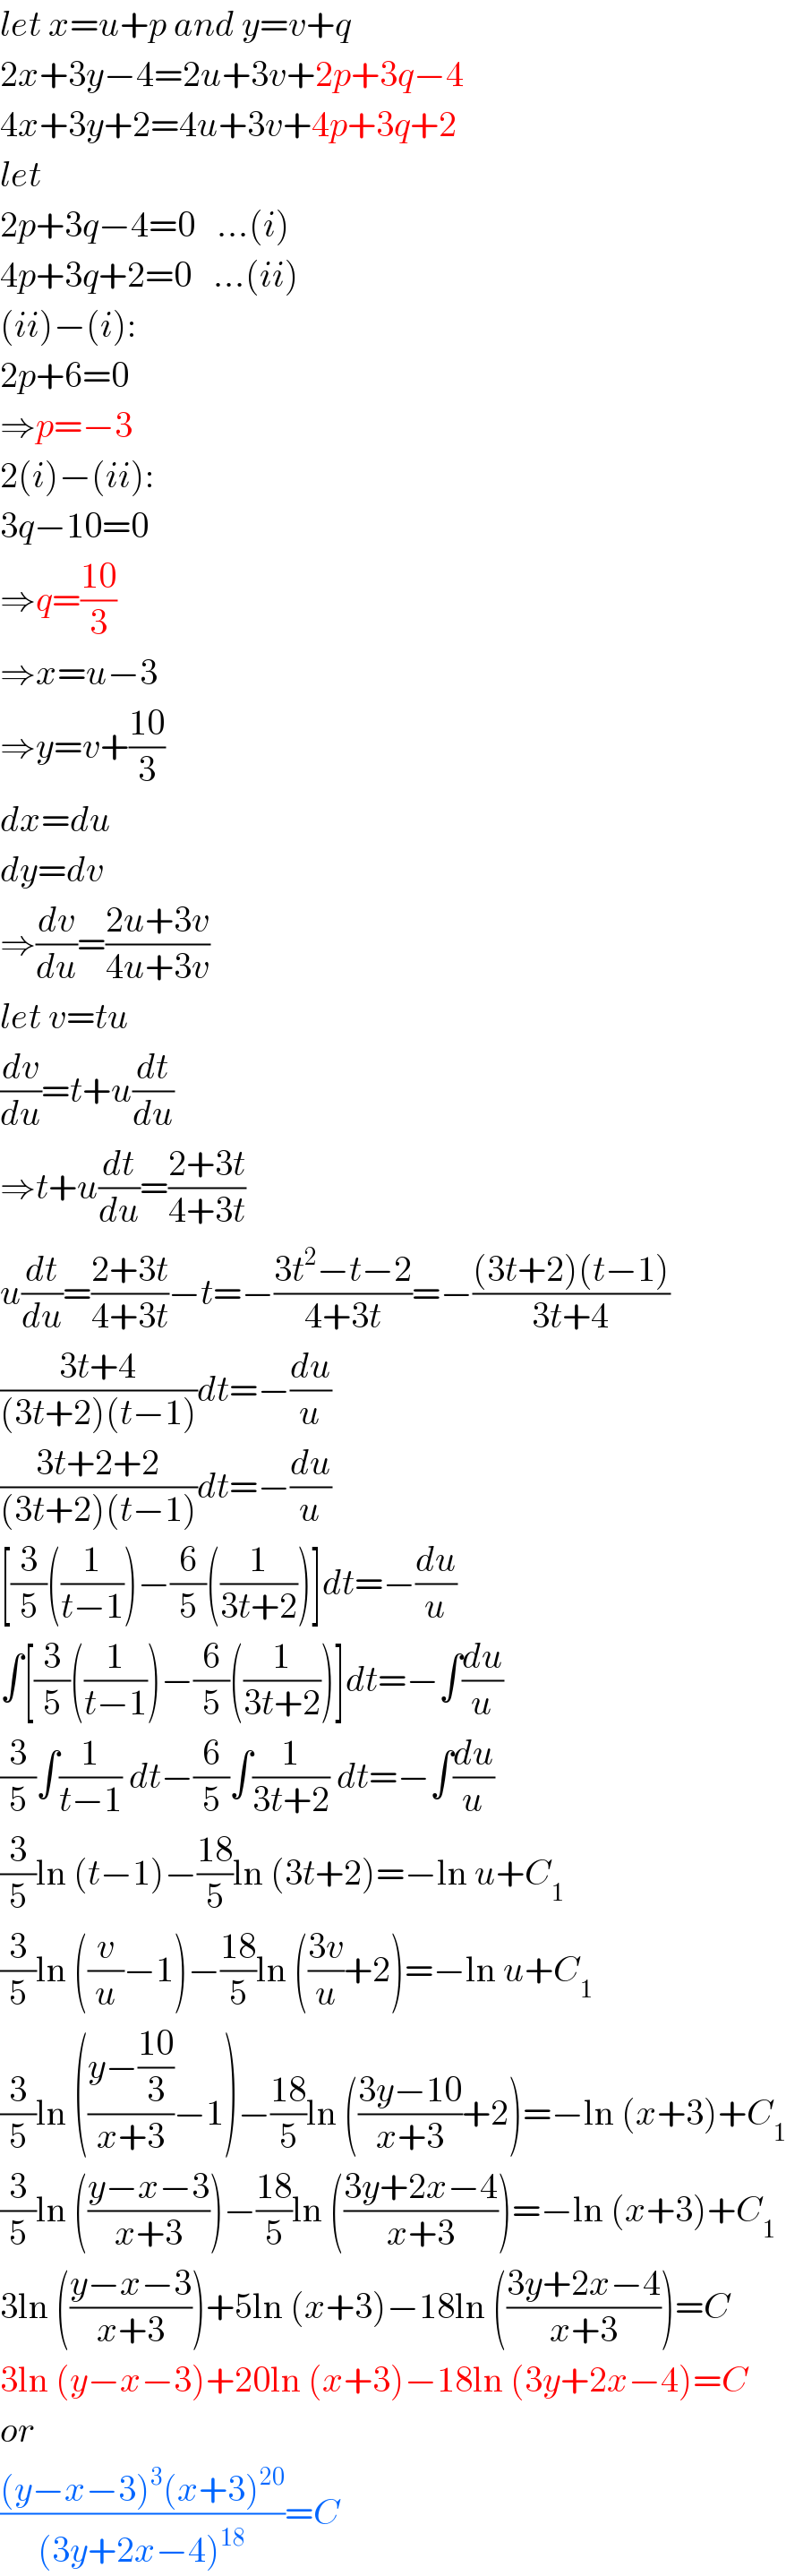 let x=u+p and y=v+q  2x+3y−4=2u+3v+2p+3q−4  4x+3y+2=4u+3v+4p+3q+2  let  2p+3q−4=0   ...(i)  4p+3q+2=0   ...(ii)  (ii)−(i):  2p+6=0  ⇒p=−3  2(i)−(ii):  3q−10=0  ⇒q=((10)/3)  ⇒x=u−3  ⇒y=v+((10)/3)  dx=du  dy=dv  ⇒(dv/du)=((2u+3v)/(4u+3v))  let v=tu  (dv/du)=t+u(dt/du)  ⇒t+u(dt/du)=((2+3t)/(4+3t))  u(dt/du)=((2+3t)/(4+3t))−t=−((3t^2 −t−2)/(4+3t))=−(((3t+2)(t−1))/(3t+4))  ((3t+4)/((3t+2)(t−1)))dt=−(du/u)  ((3t+2+2)/((3t+2)(t−1)))dt=−(du/u)  [(3/5)((1/(t−1)))−(6/5)((1/(3t+2)))]dt=−(du/u)  ∫[(3/5)((1/(t−1)))−(6/5)((1/(3t+2)))]dt=−∫(du/u)  (3/5)∫(1/(t−1)) dt−(6/5)∫(1/(3t+2)) dt=−∫(du/u)  (3/5)ln (t−1)−((18)/5)ln (3t+2)=−ln u+C_1   (3/5)ln ((v/u)−1)−((18)/5)ln (((3v)/u)+2)=−ln u+C_1   (3/5)ln (((y−((10)/3))/(x+3))−1)−((18)/5)ln (((3y−10)/(x+3))+2)=−ln (x+3)+C_1   (3/5)ln (((y−x−3)/(x+3)))−((18)/5)ln (((3y+2x−4)/(x+3)))=−ln (x+3)+C_1   3ln (((y−x−3)/(x+3)))+5ln (x+3)−18ln (((3y+2x−4)/(x+3)))=C  3ln (y−x−3)+20ln (x+3)−18ln (3y+2x−4)=C  or  (((y−x−3)^3 (x+3)^(20) )/((3y+2x−4)^(18) ))=C  